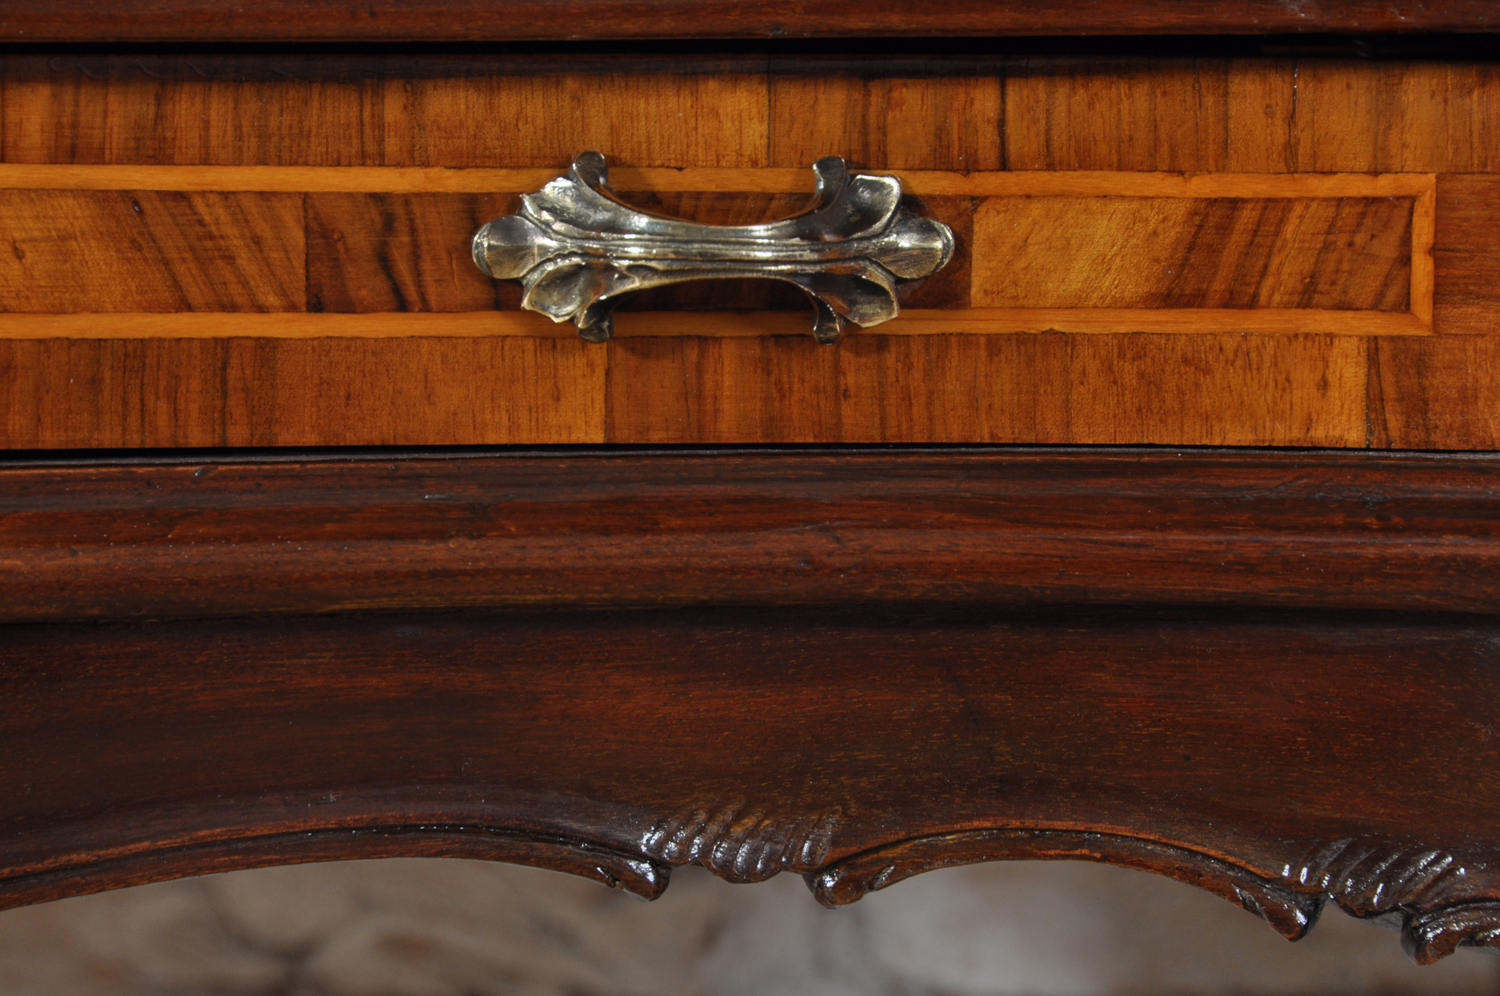 maniglia in ottone massiccio realizzata cesellata e lucidata a mano lussuoso accessorio costruito in stile classico barocco veneziano maniglia esclusiva del cassetto centrale